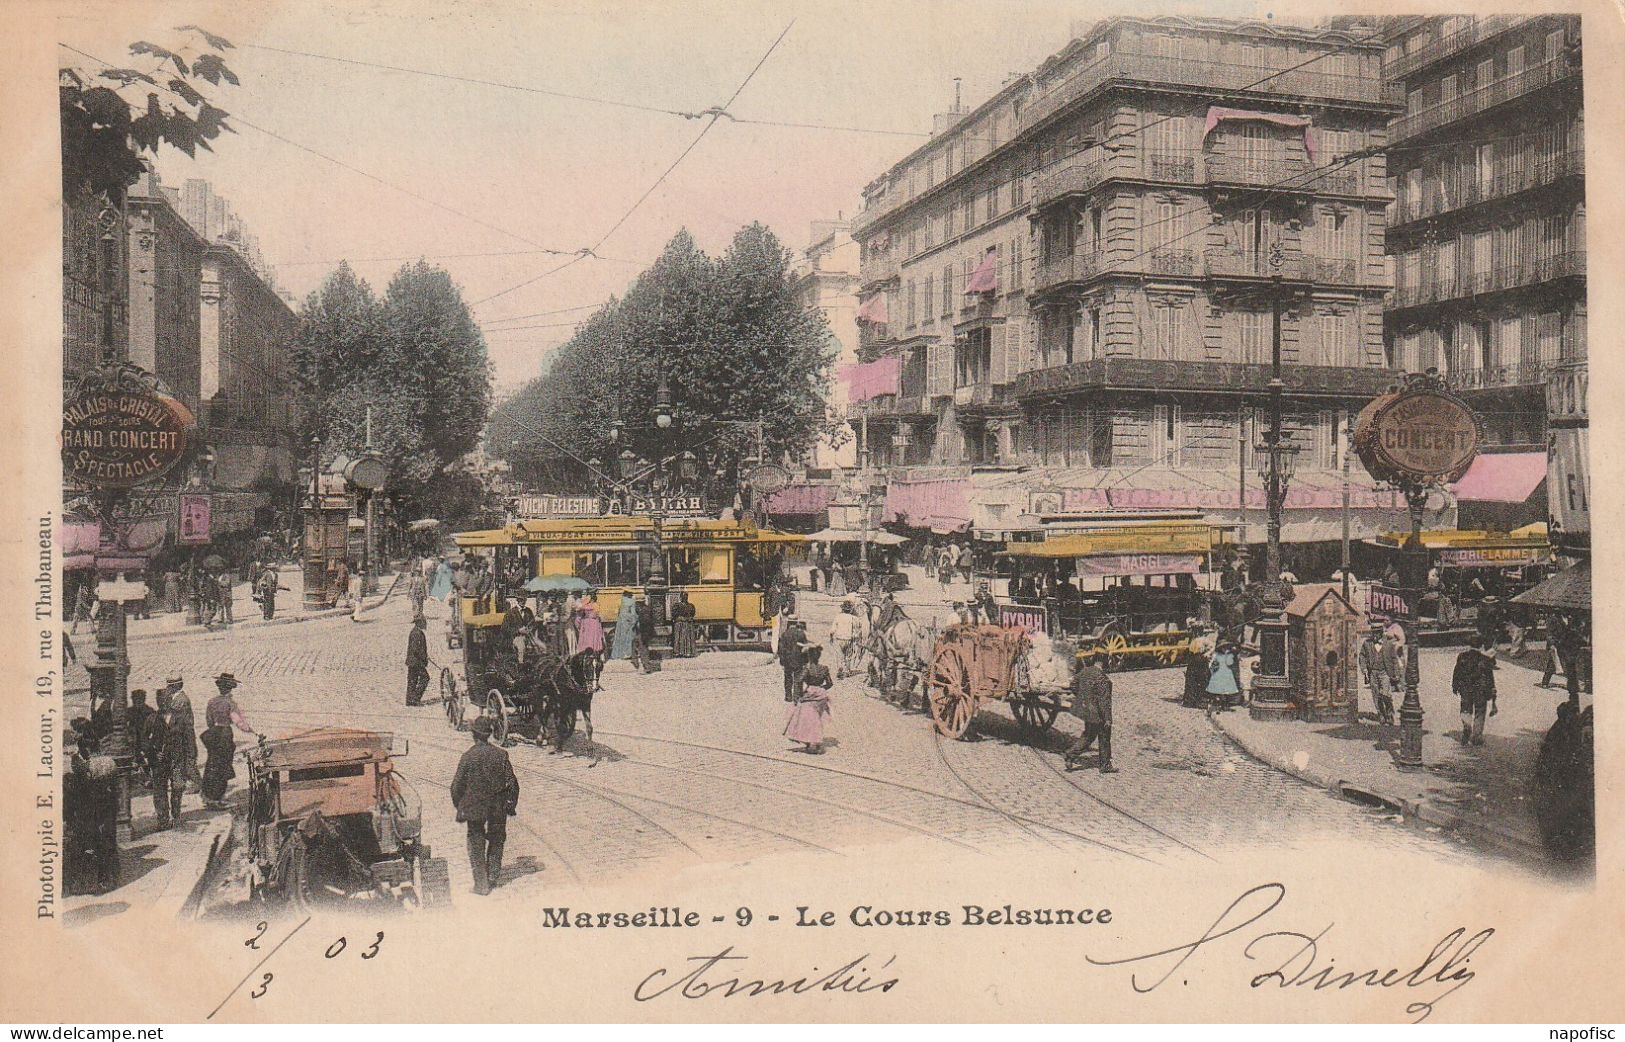 13-Marseille Le Cours Belsunce - The Canebière, City Centre